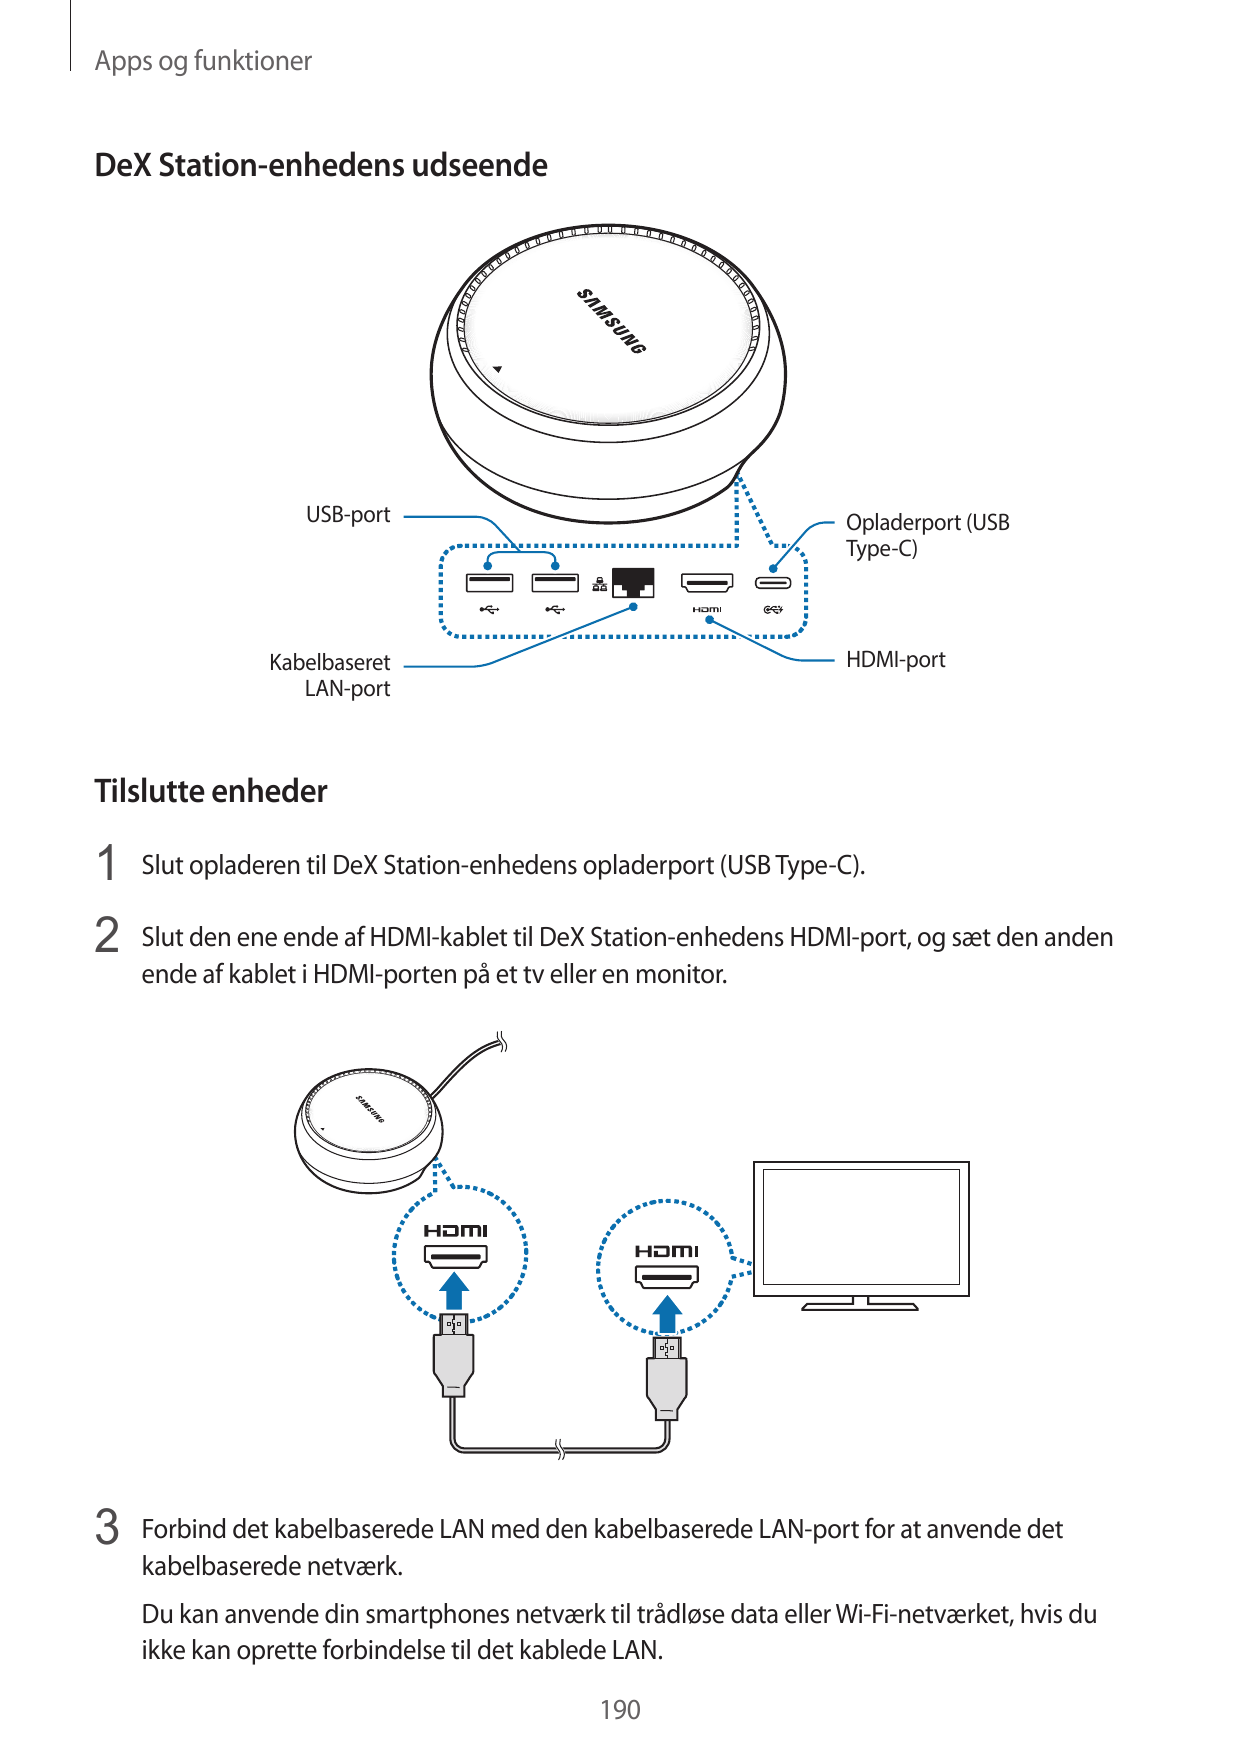 Apps og funktionerDeX Station-enhedens udseendeUSB-portOpladerport (USBType-C)HDMI-portKabelbaseretLAN-portTilslutte enheder1 Sl